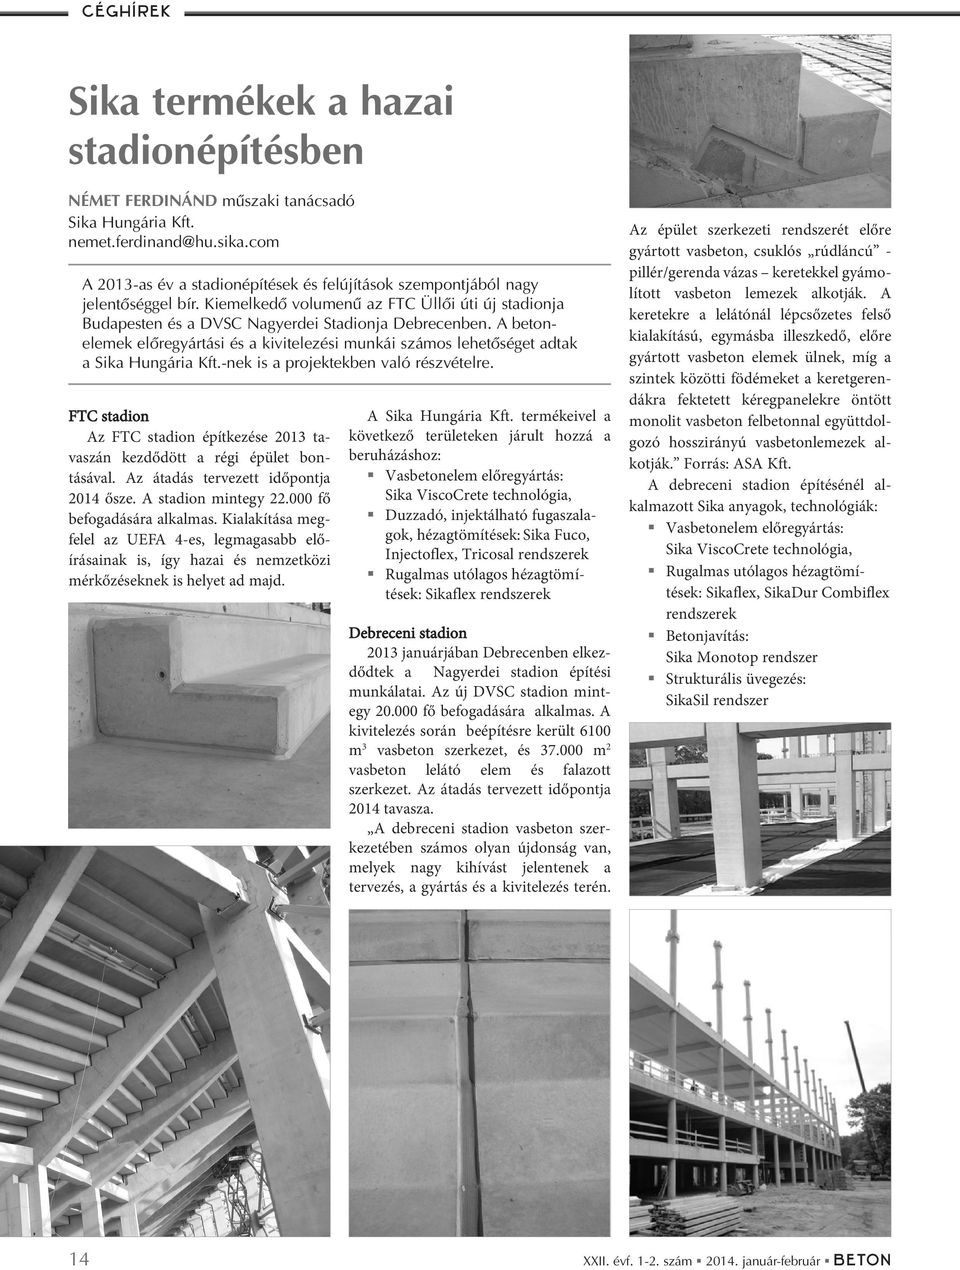 A beton - elemek elõregyártási és a kivitelezési munkái számos lehetõséget adtak a Sika Hungária Kft.-nek is a projektekben való részvételre.